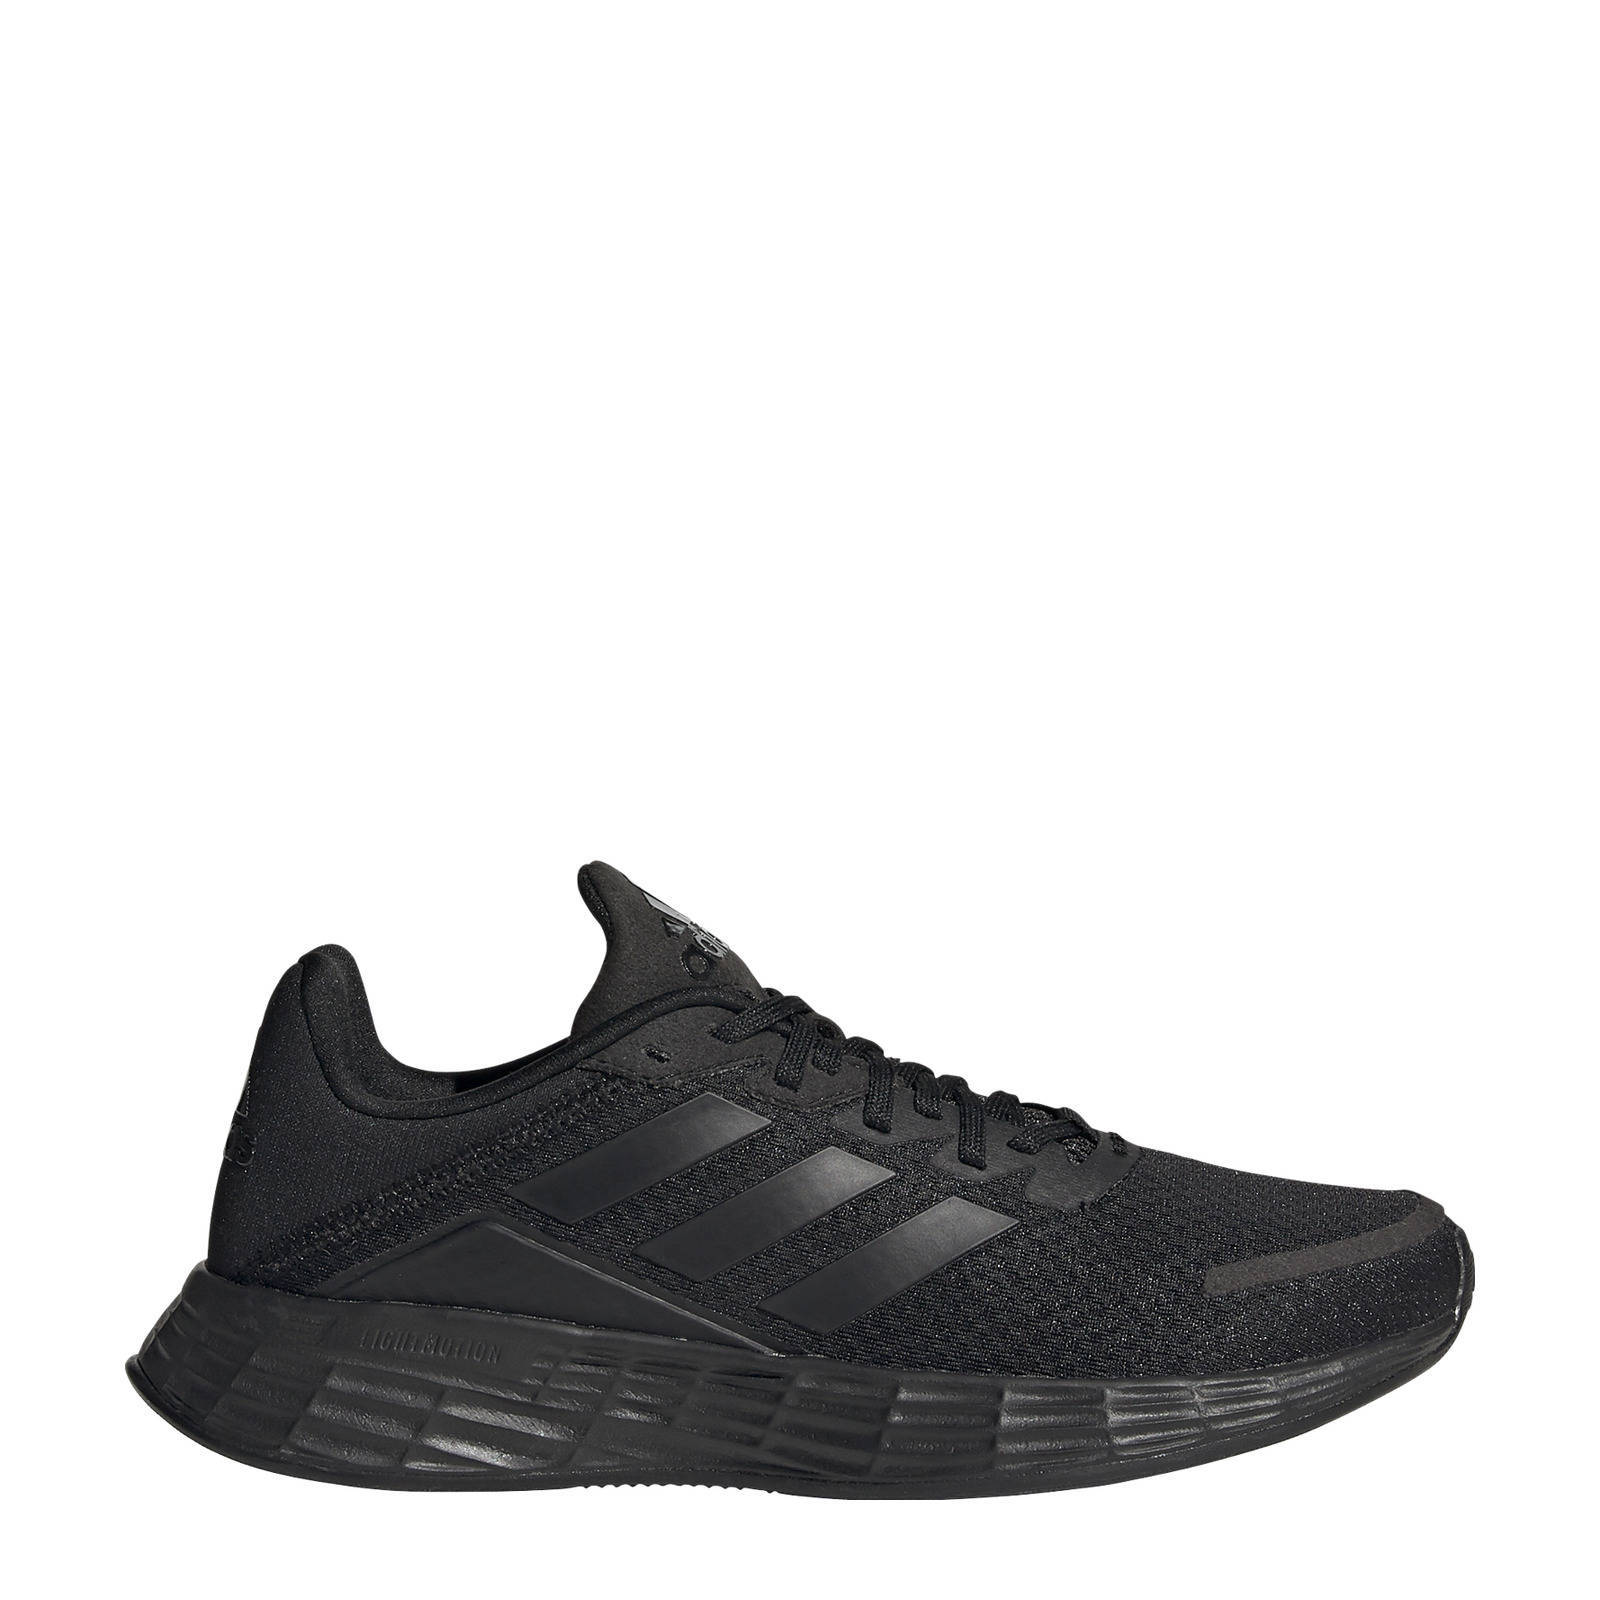 Adidas Performance Duramo SL hardloopschoenen zwart/grijs kids online kopen